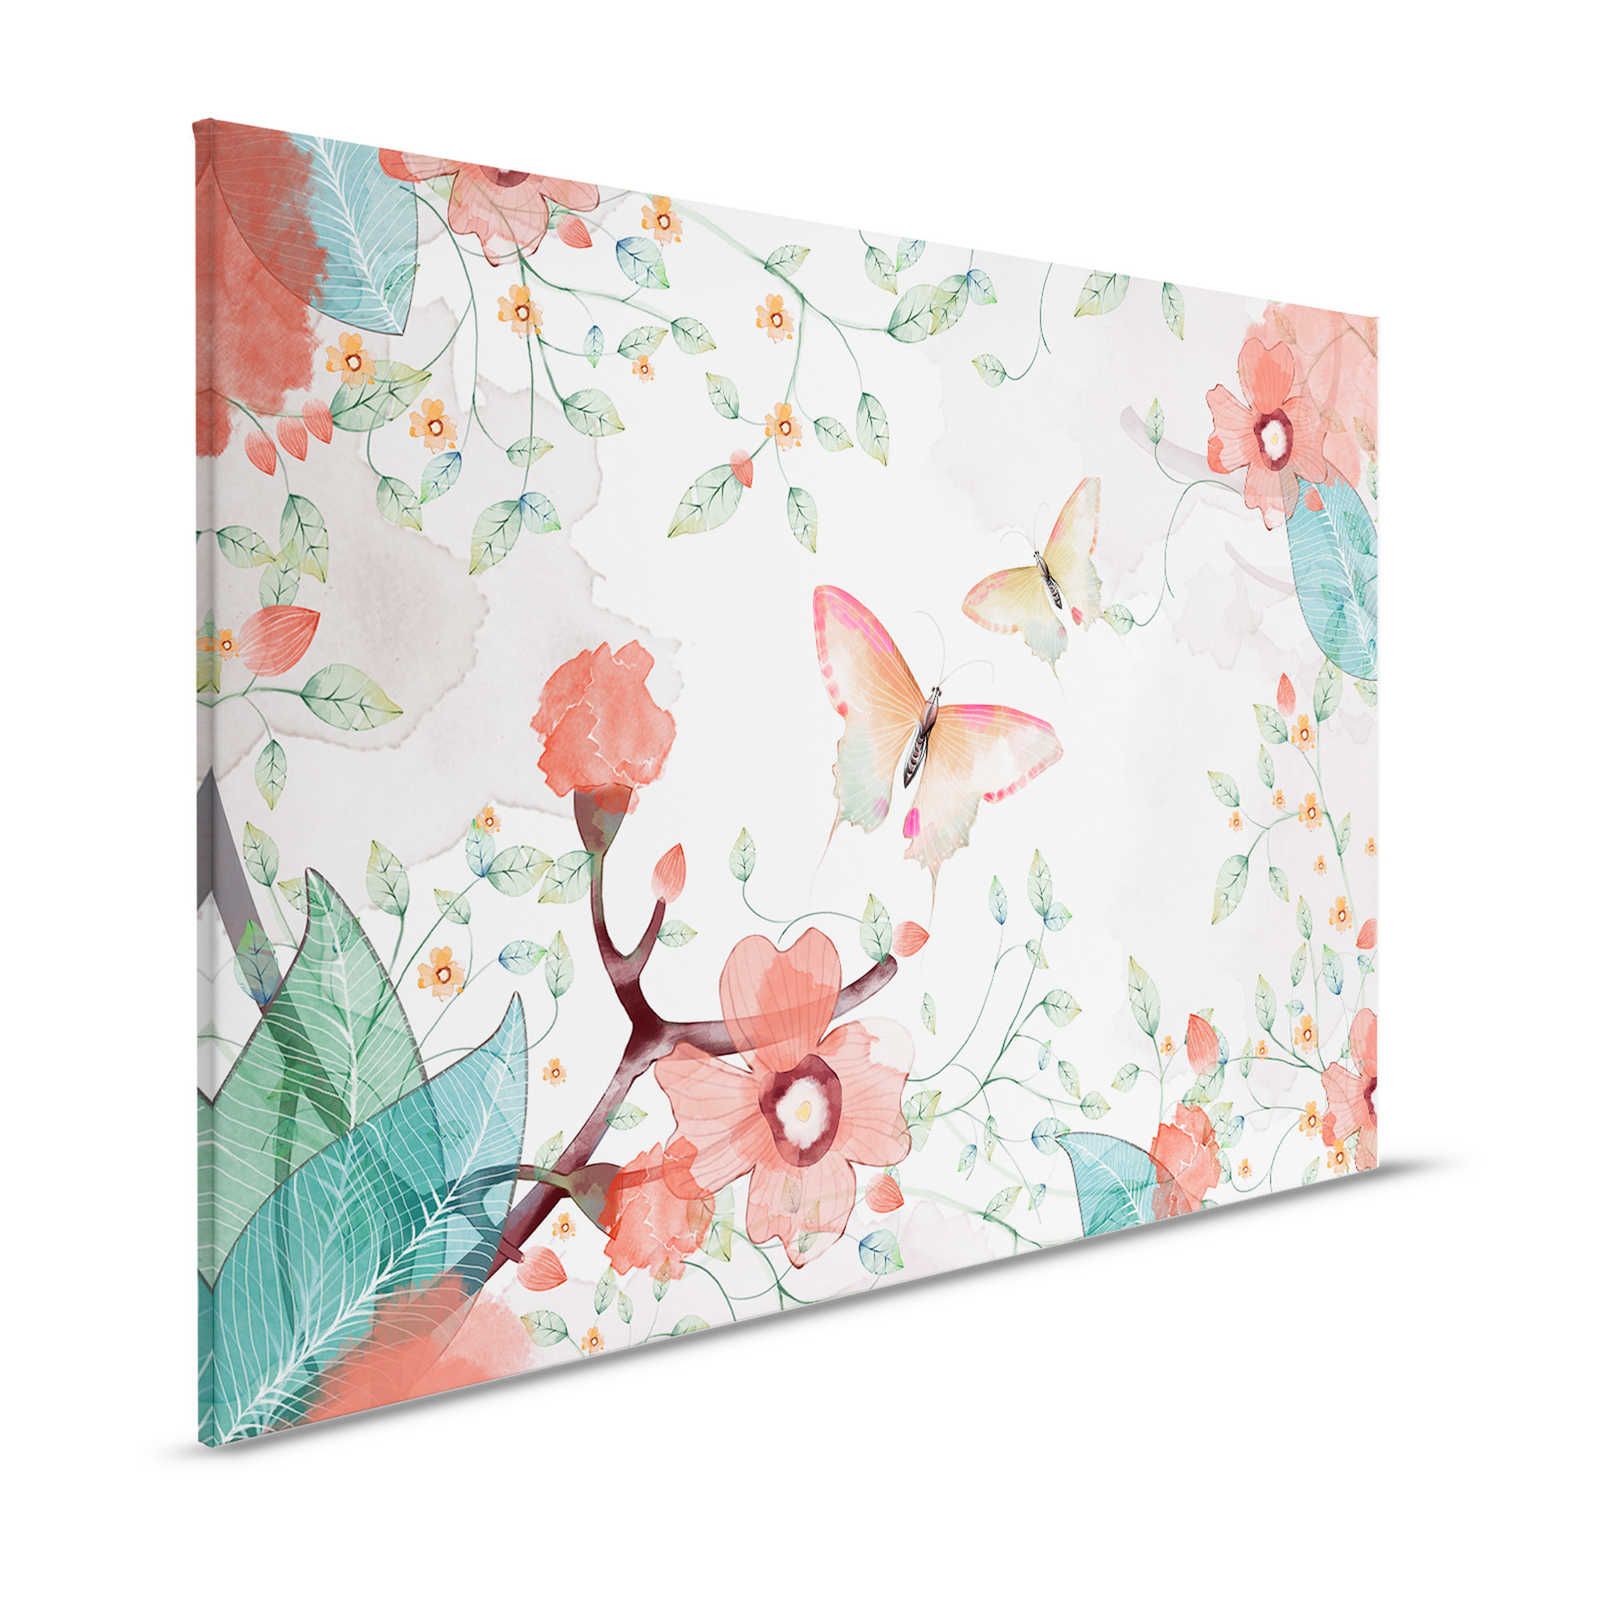 Leinwand floral mit Blättern und Schmetterlingen – 120 cm x 80 cm
